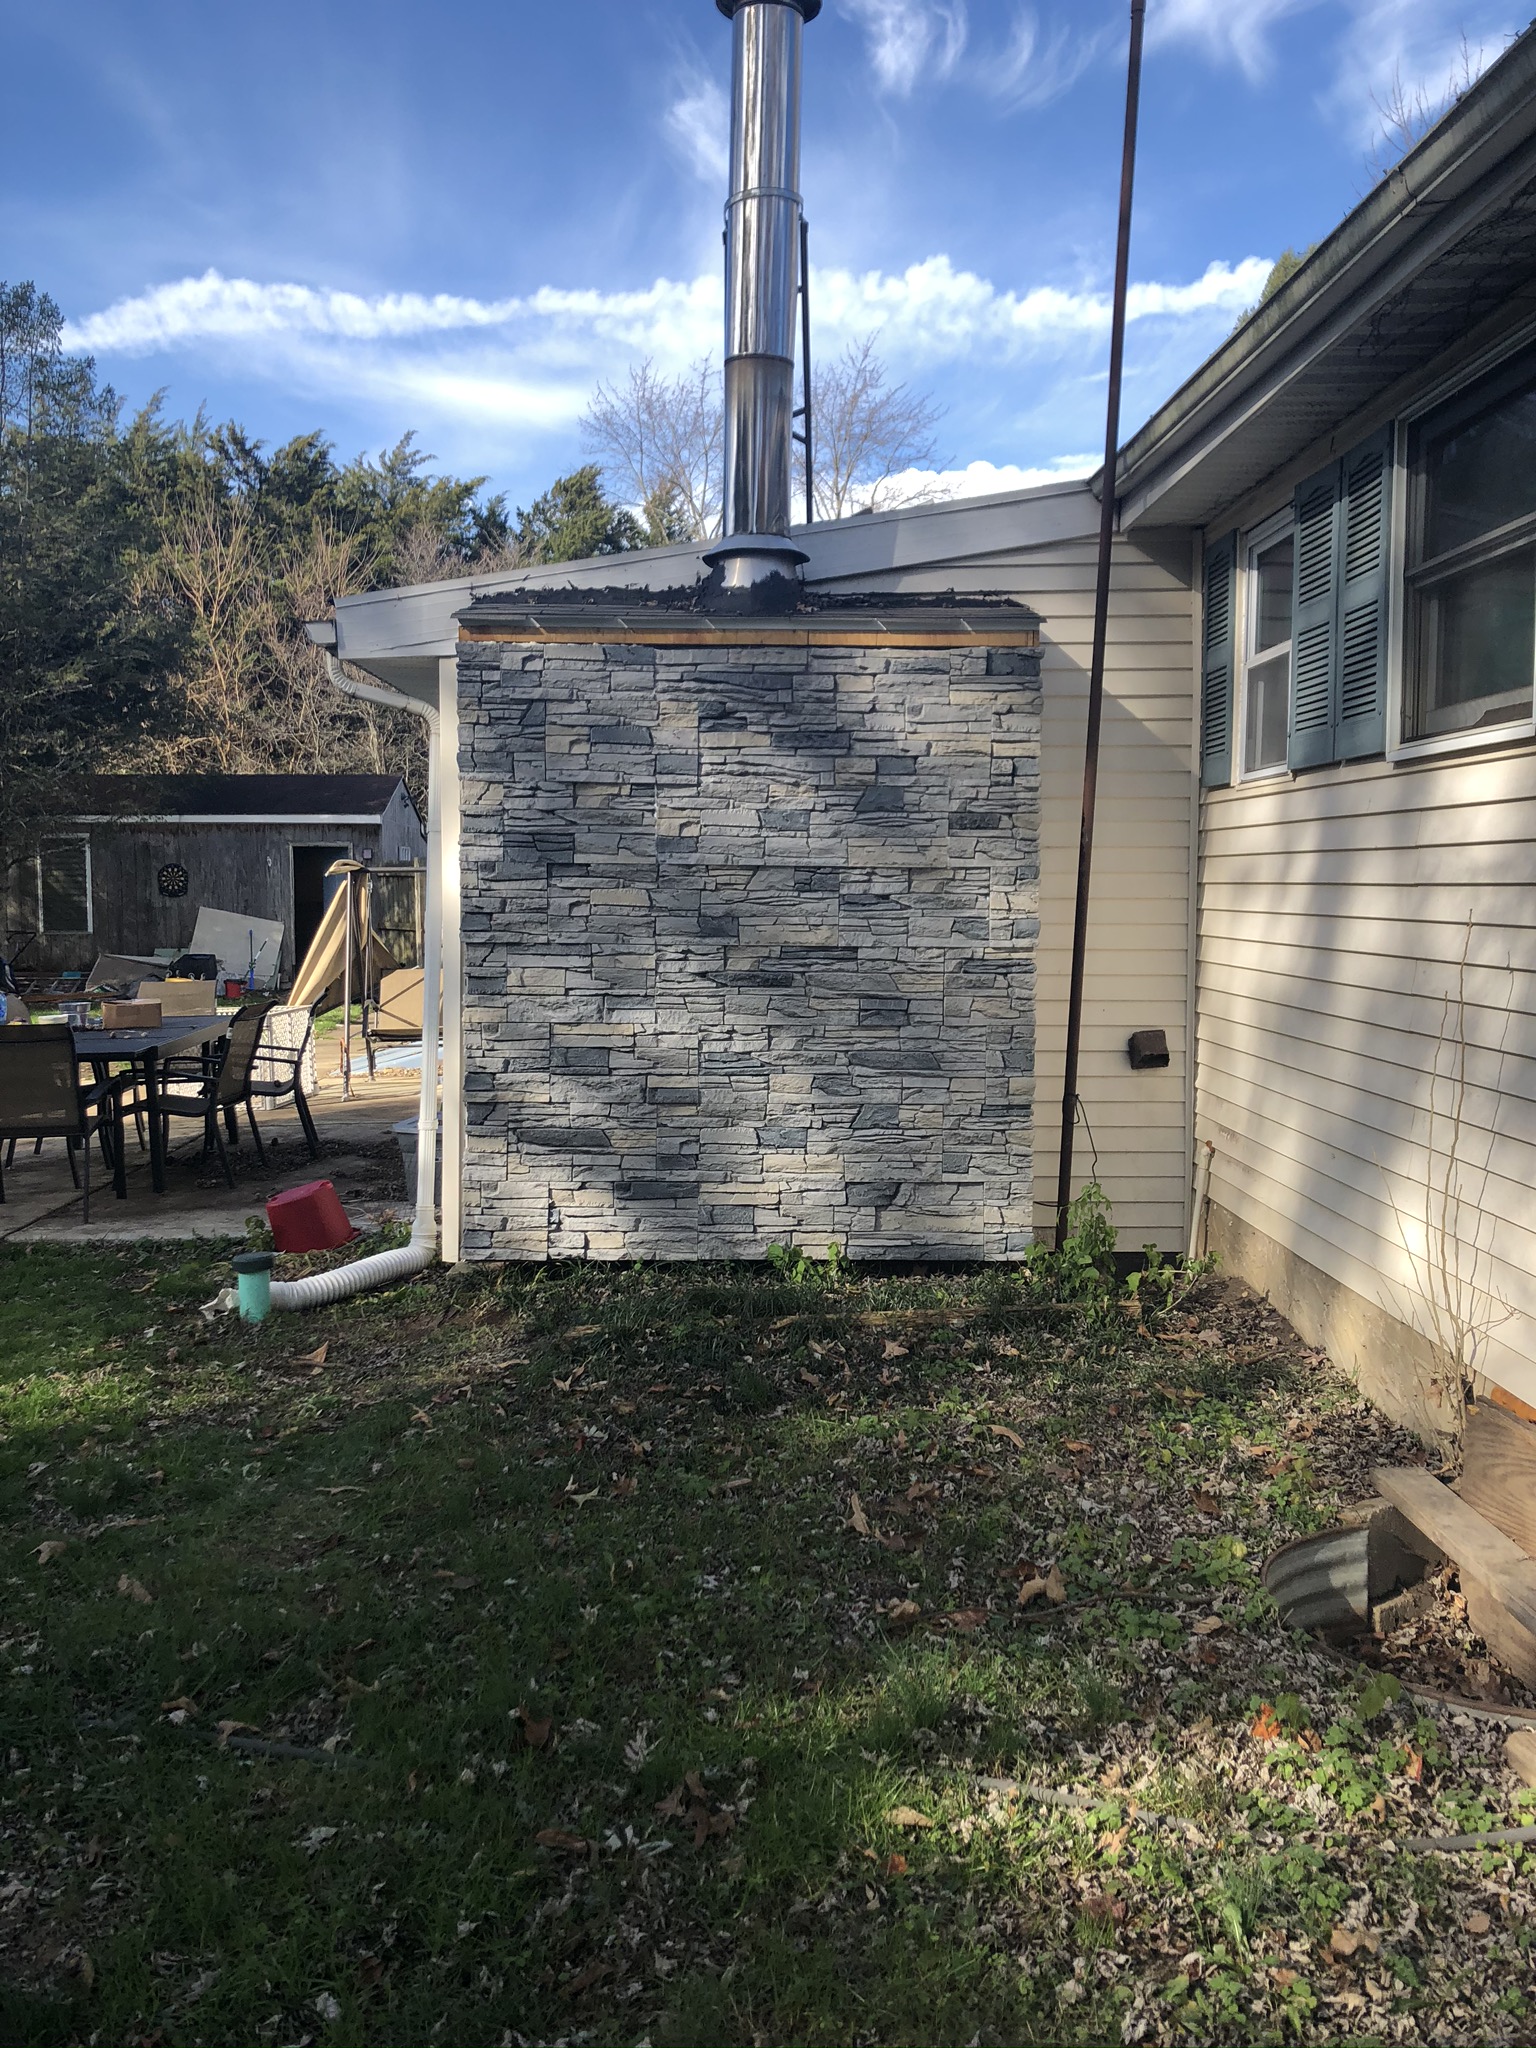 Northern Slate exterior stone veneer chimney